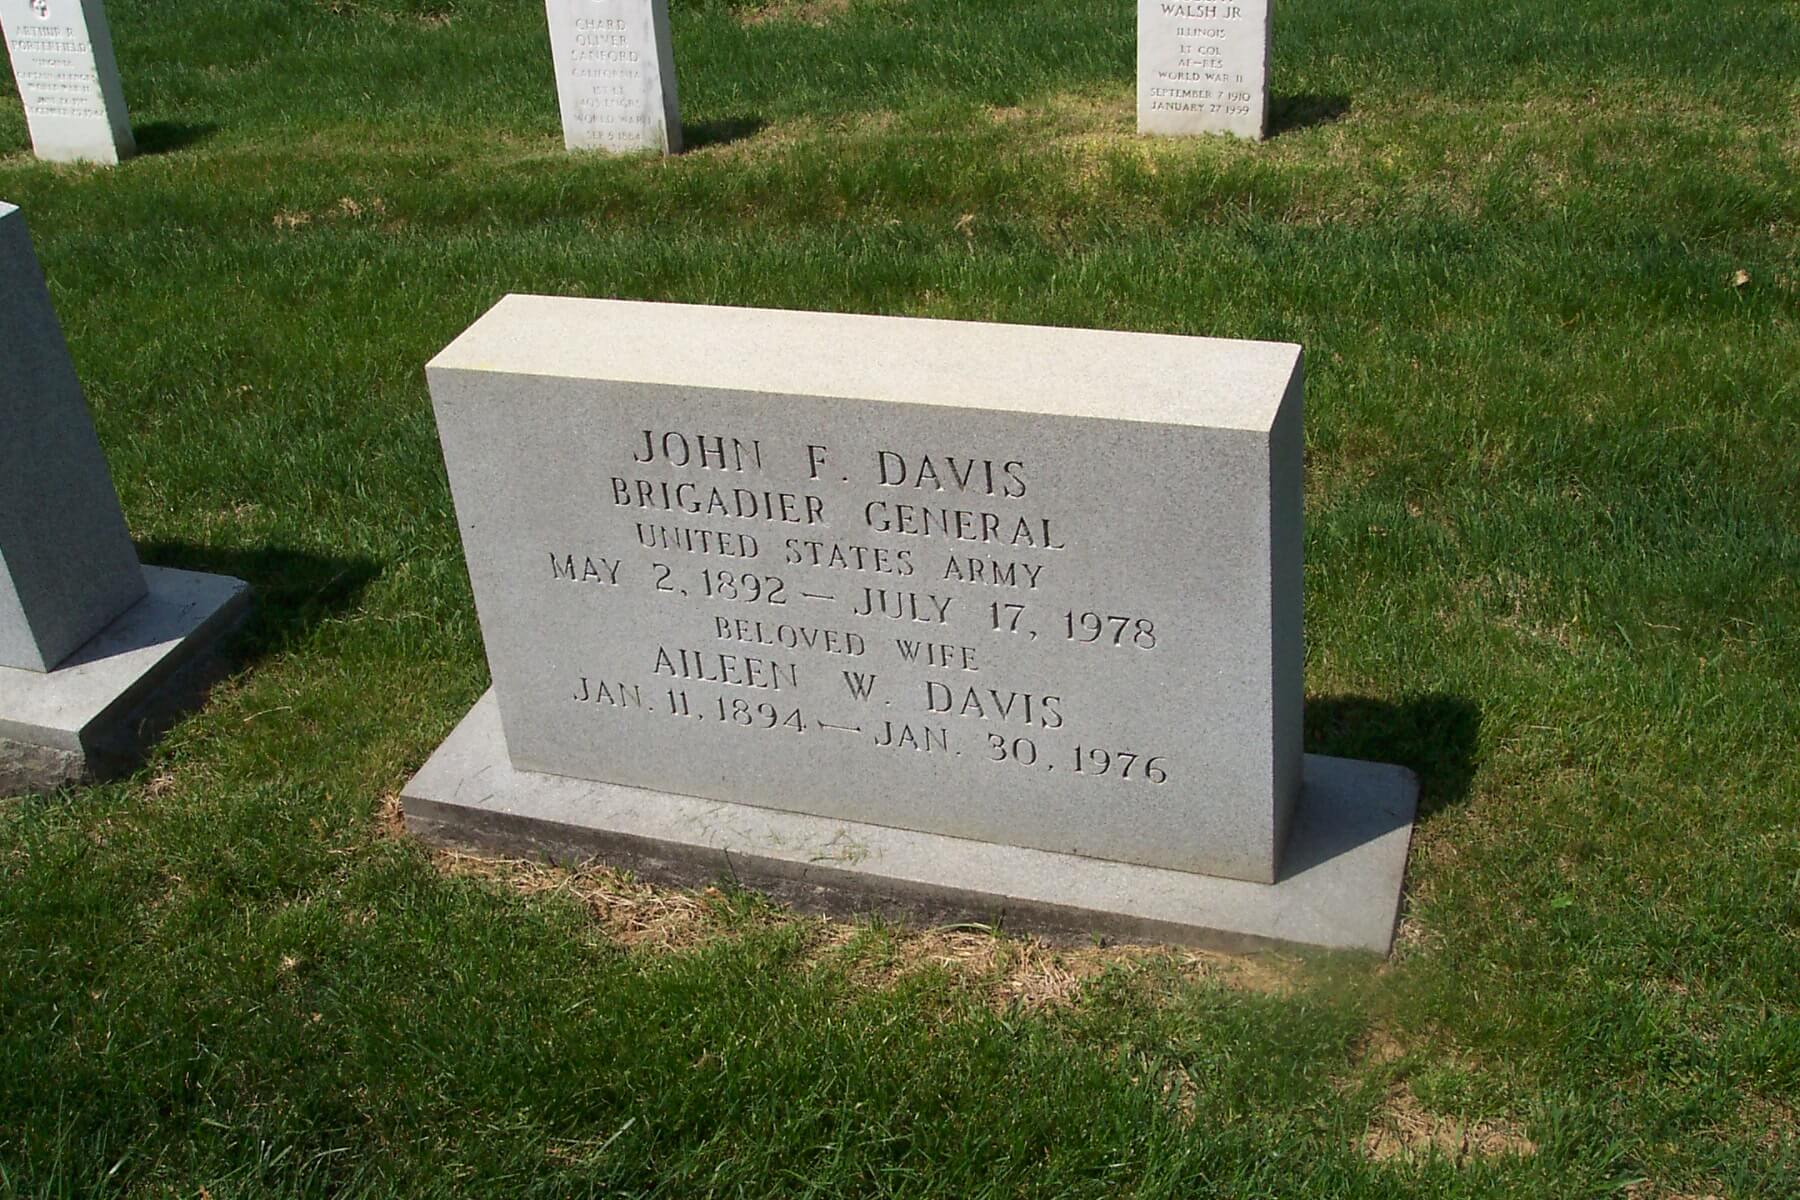 jfdavis-gravesite-photo-april-2004-001.jpg